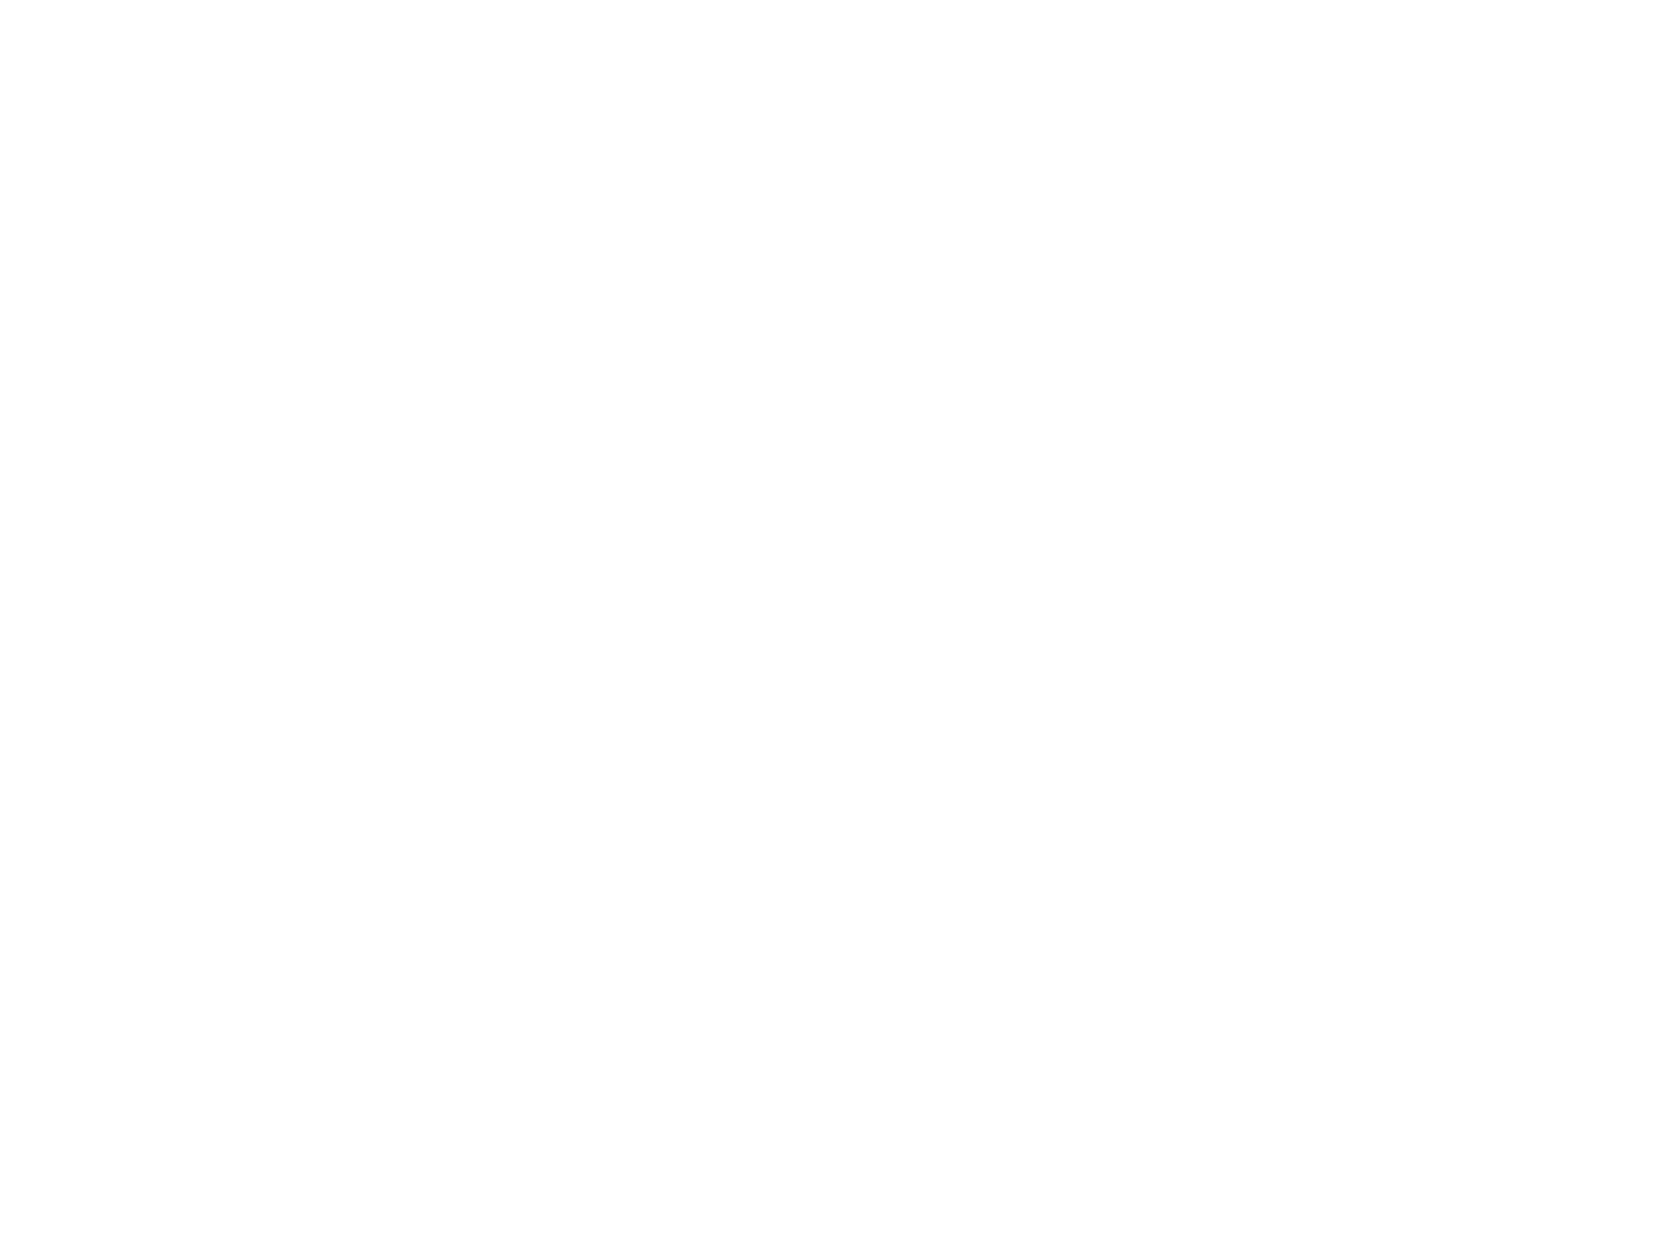 Kurtoons Logo